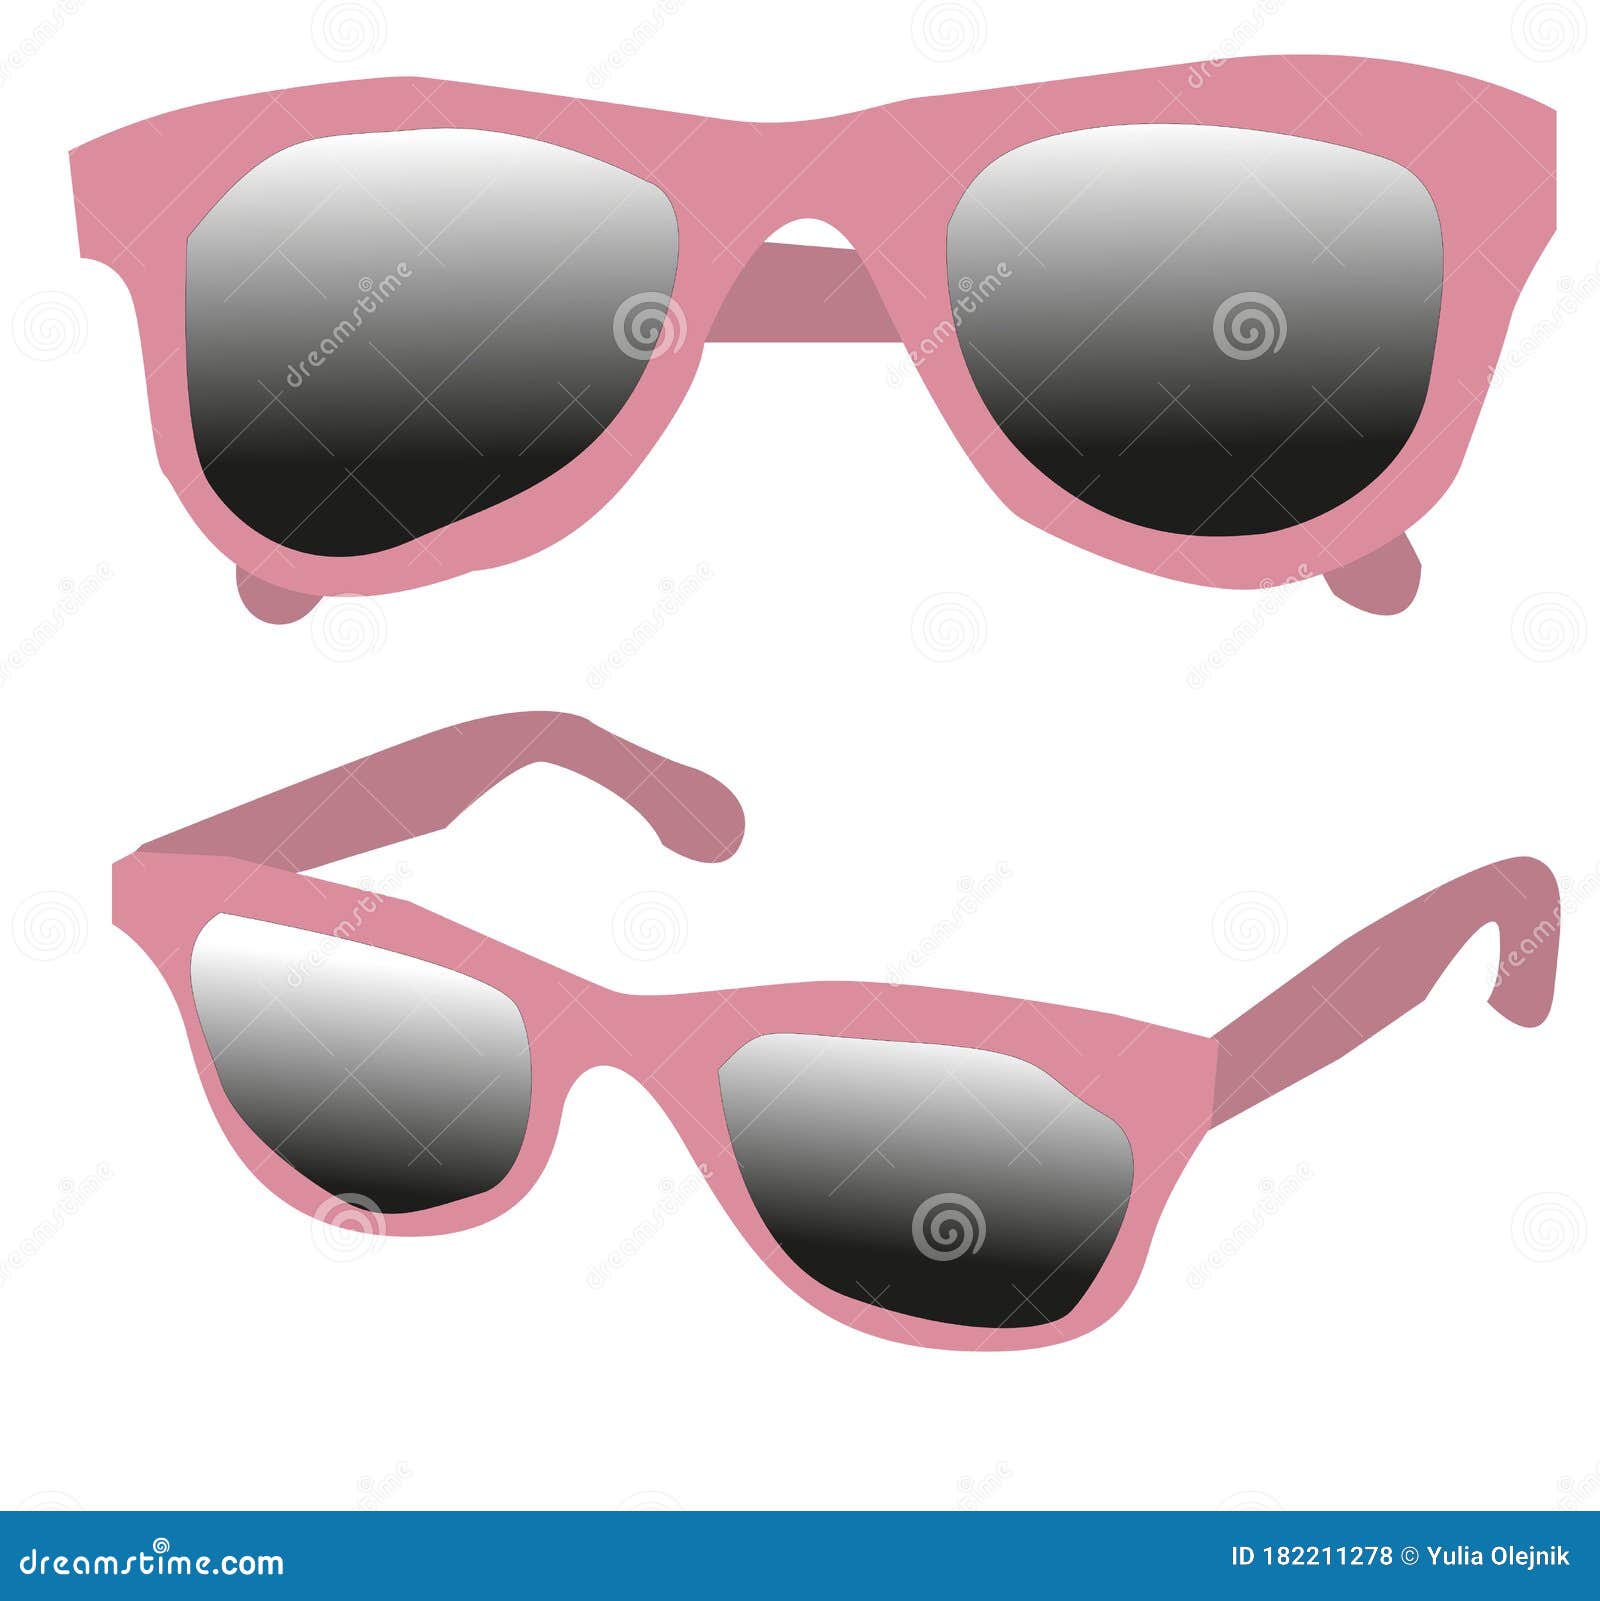 https://thumbs.dreamstime.com/z/gafas-de-sol-rosadas-con-oscuras-dibujo-vectorial-en-diferentes-posiciones-dos-pares-182211278.jpg